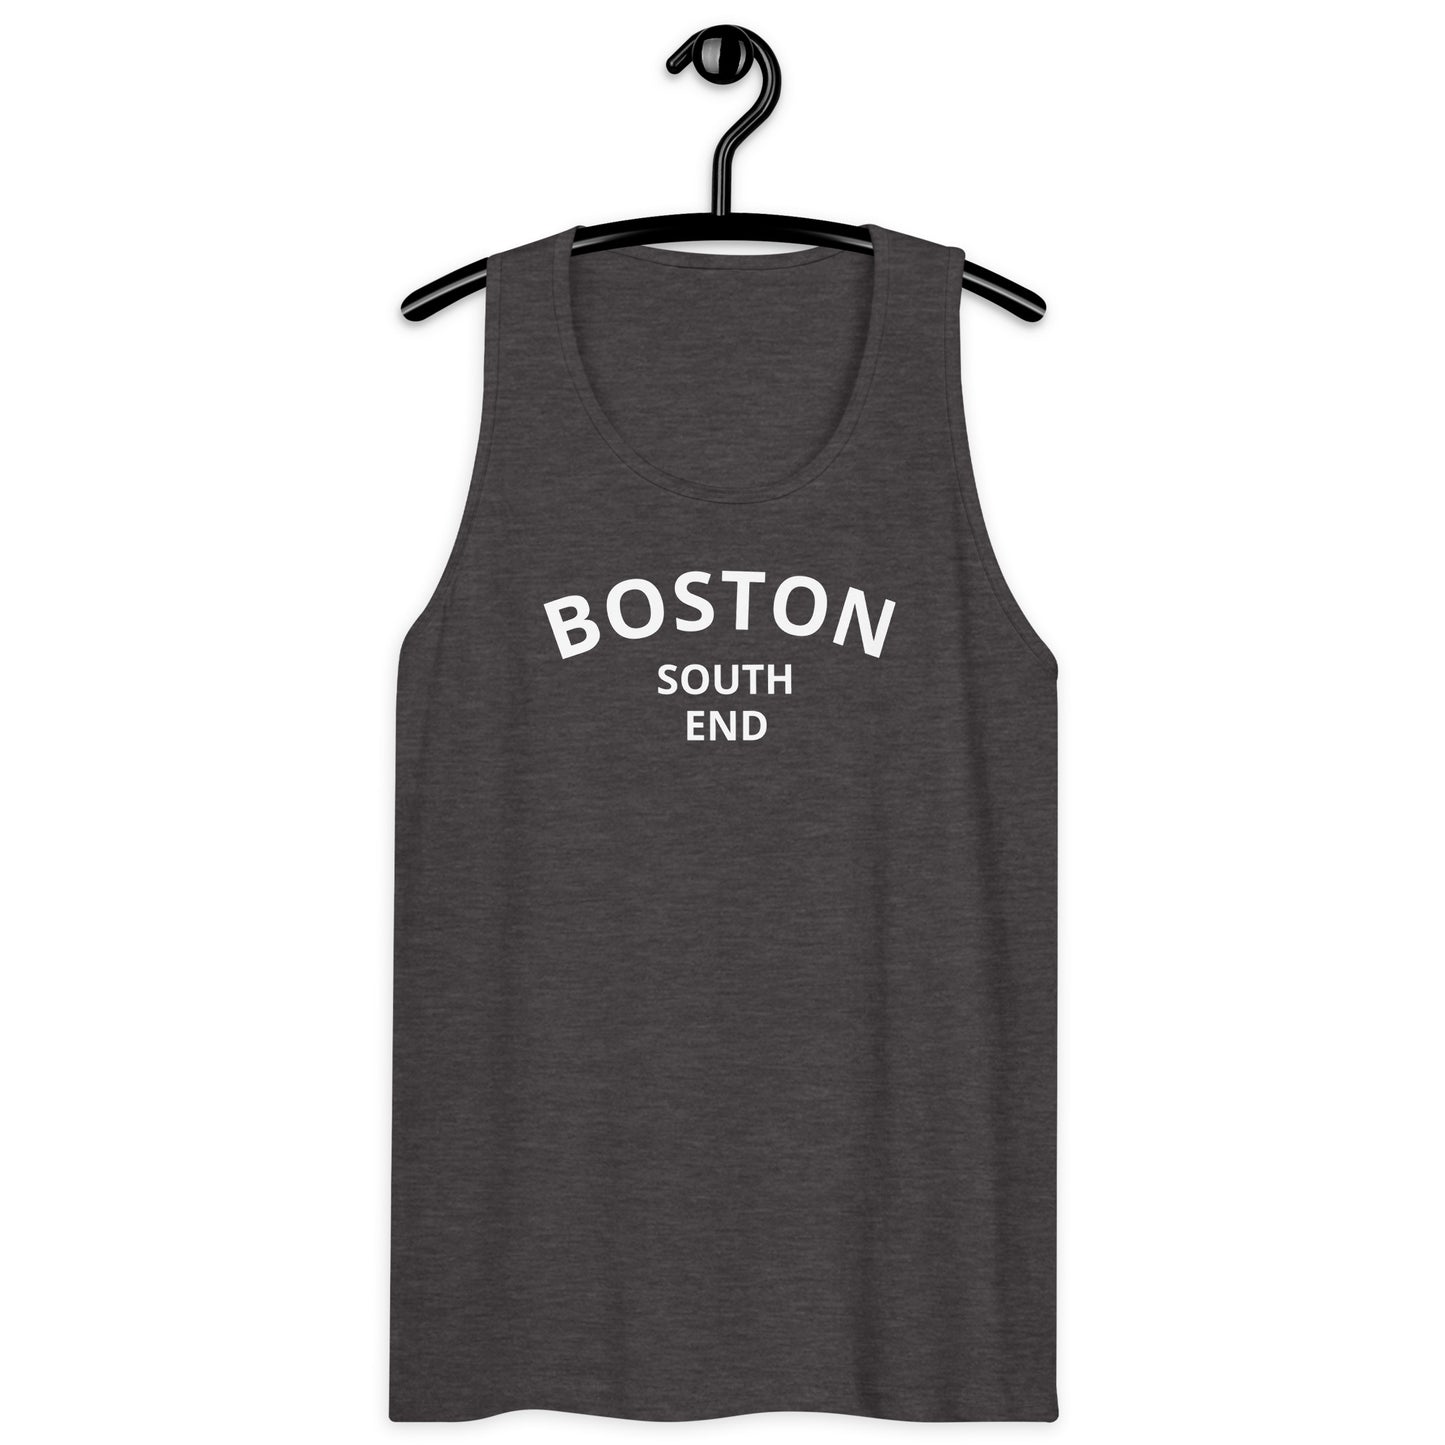 Boston South End men’s premium tank top